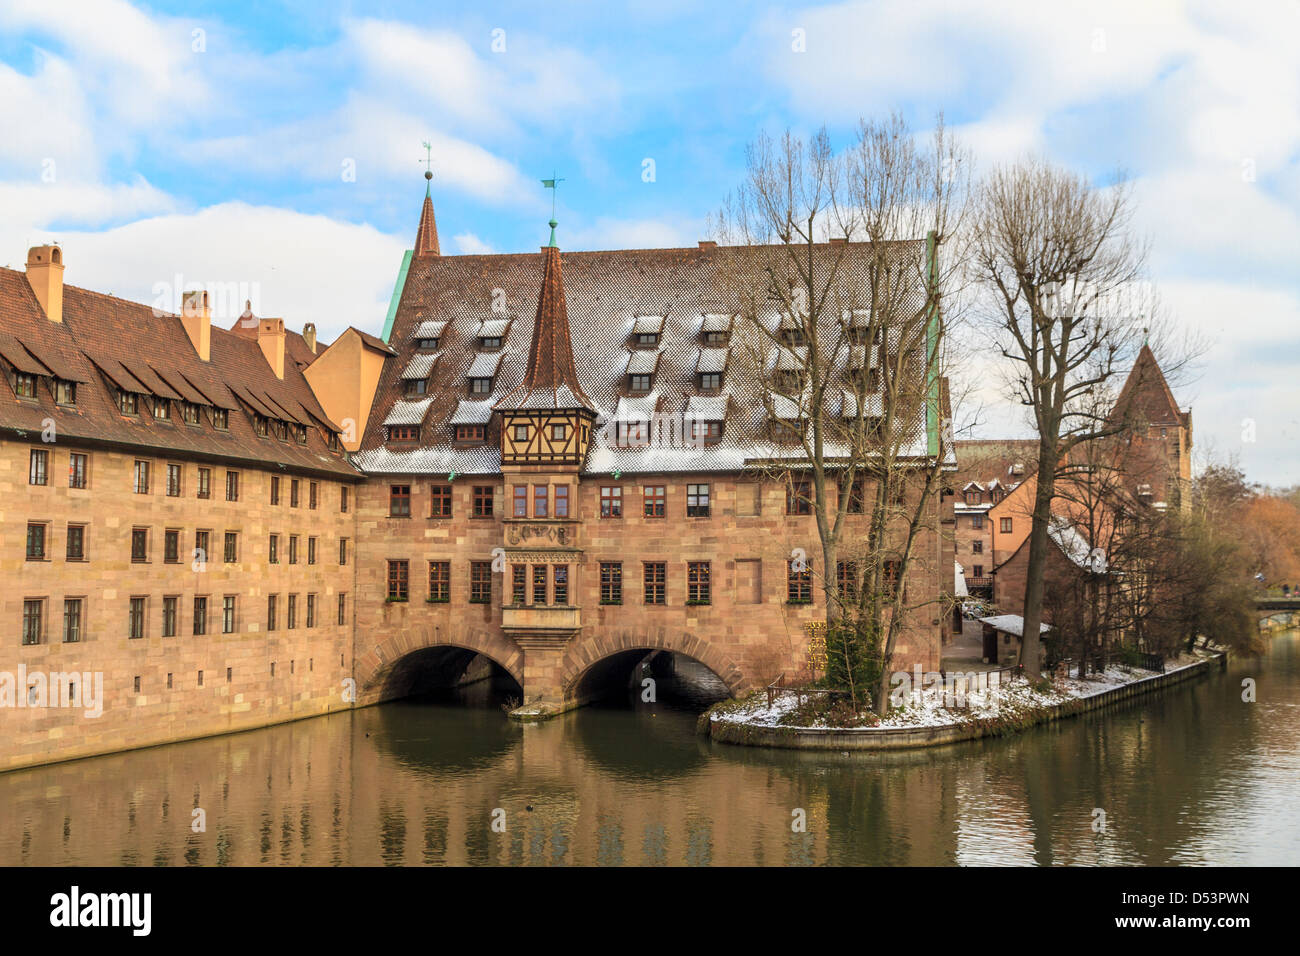 Au moment de Noël de Nuremberg, l'ancien hôpital médiéval le long de la rivière, Allemagne Banque D'Images